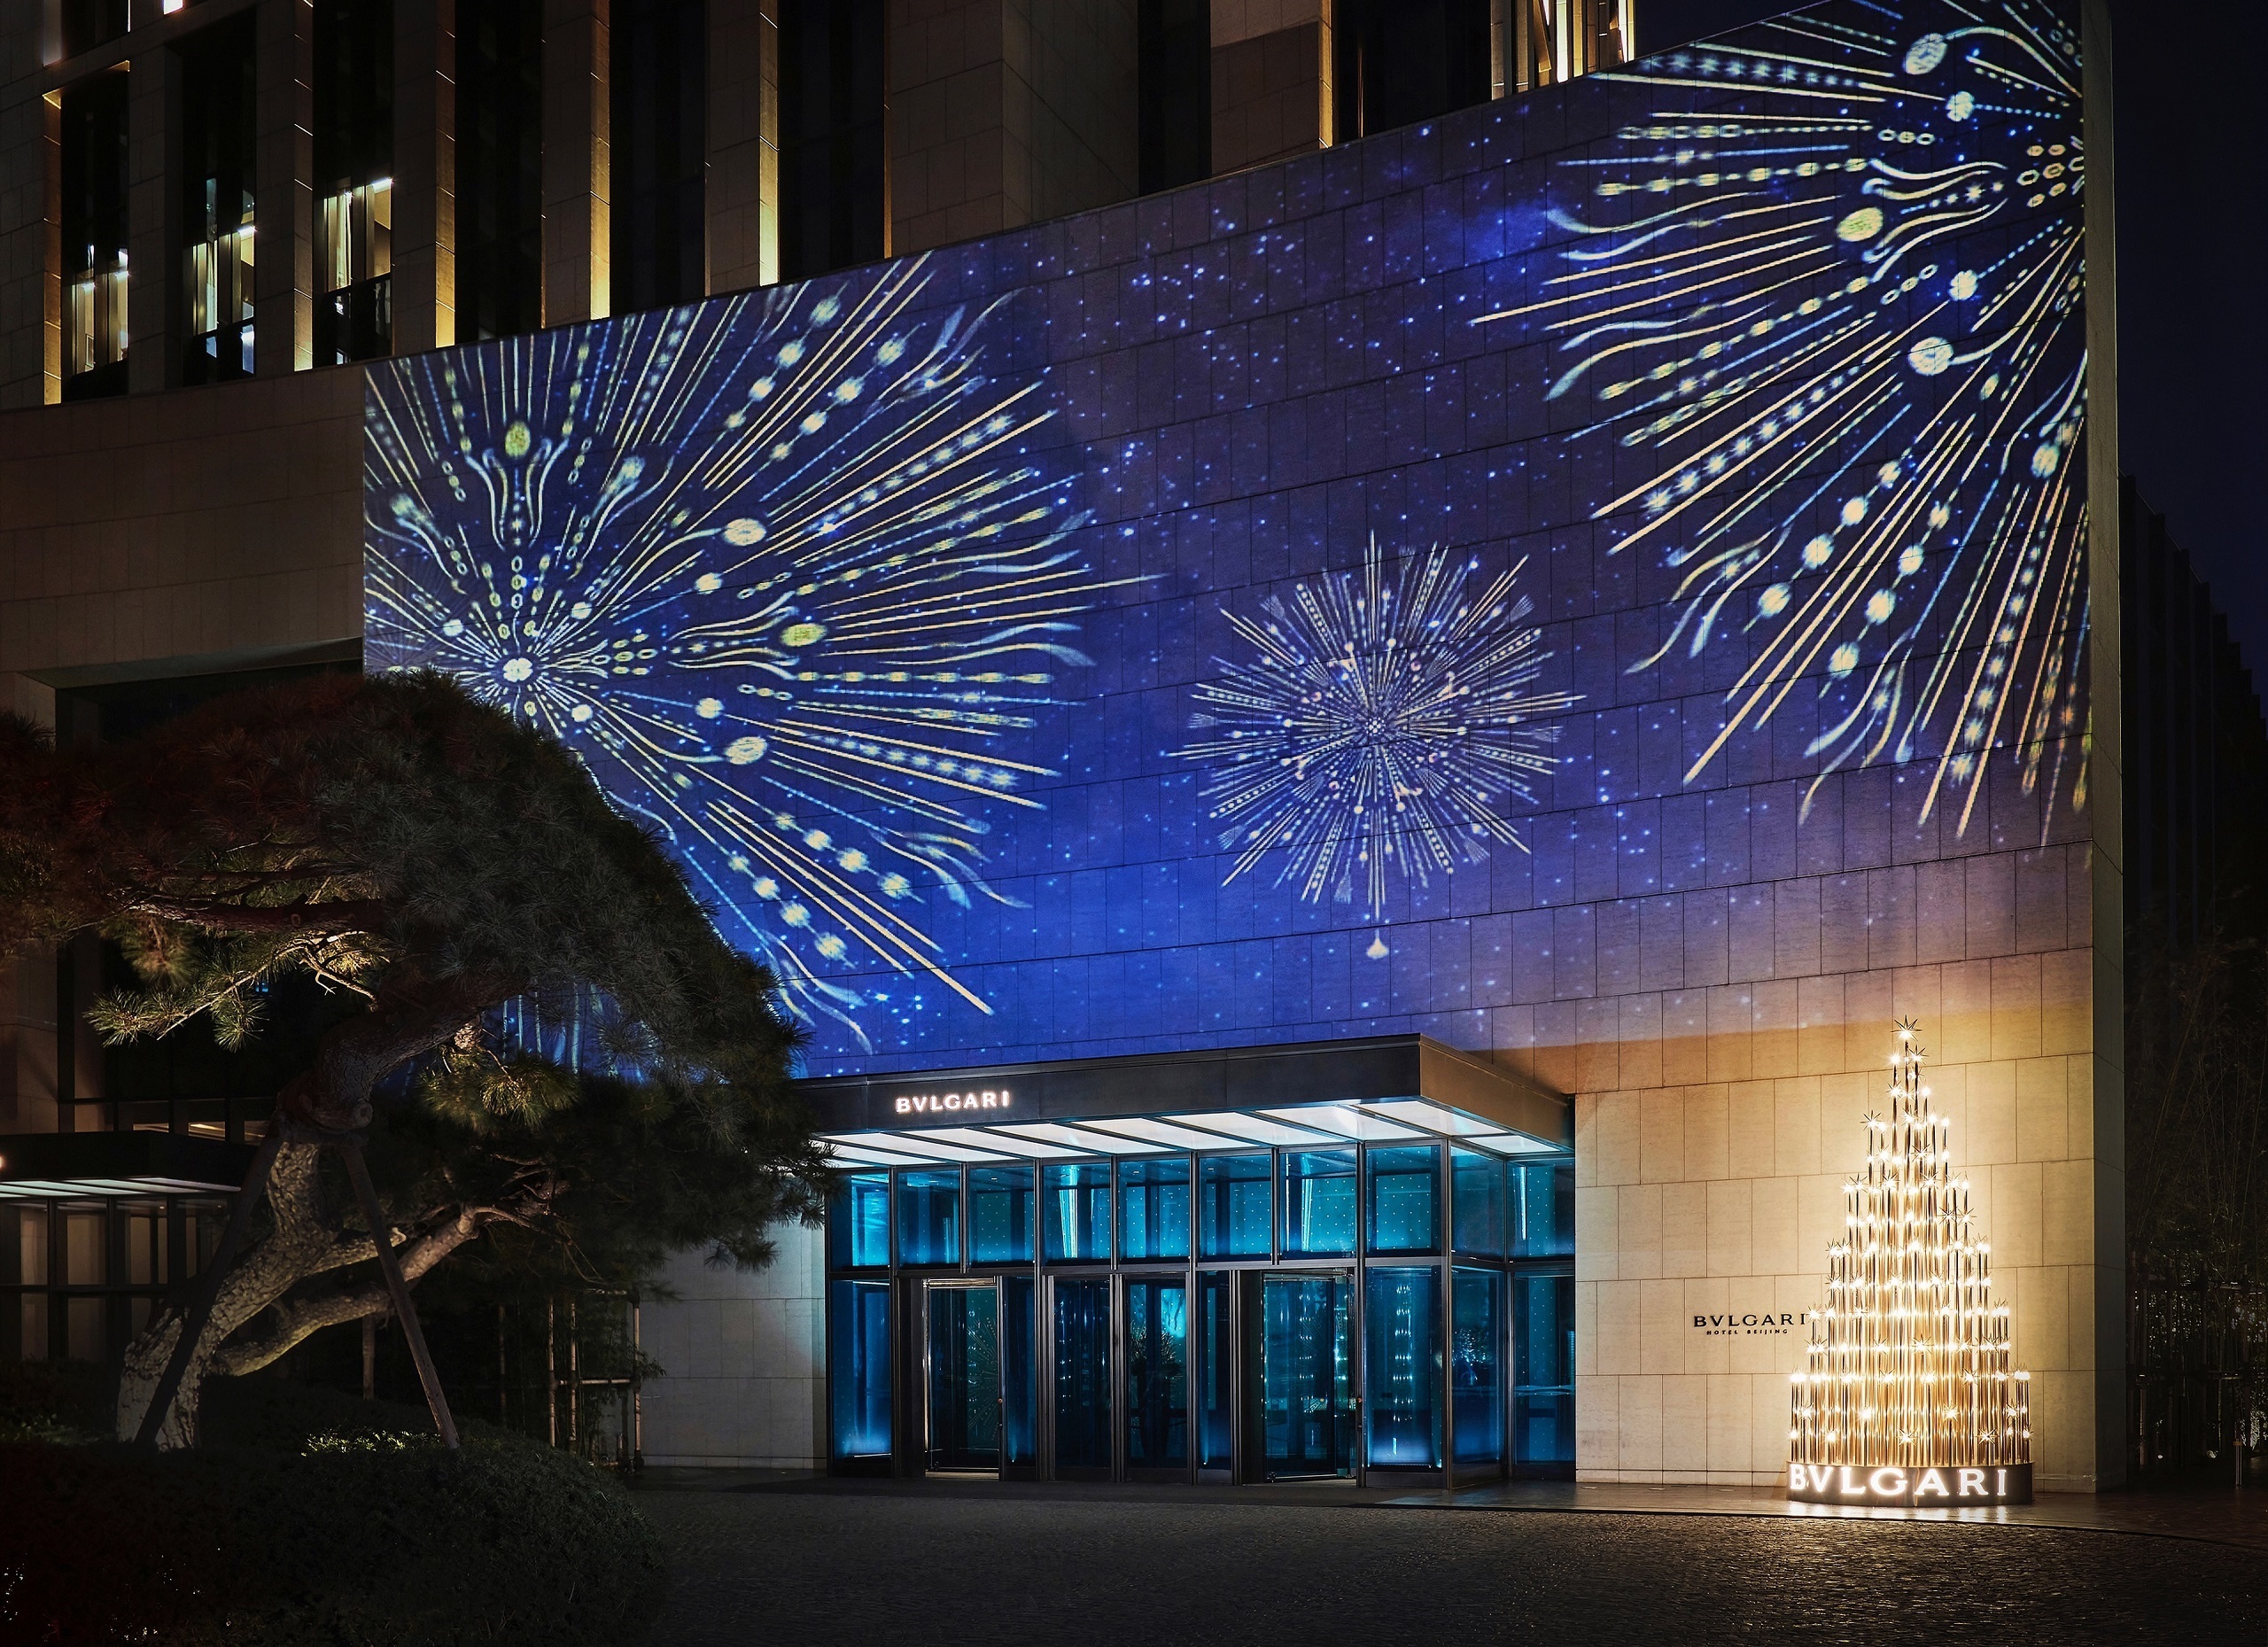 北京宝格丽酒店节日季外观灯光秀及圣诞装置北京宝格丽酒店2021节日季